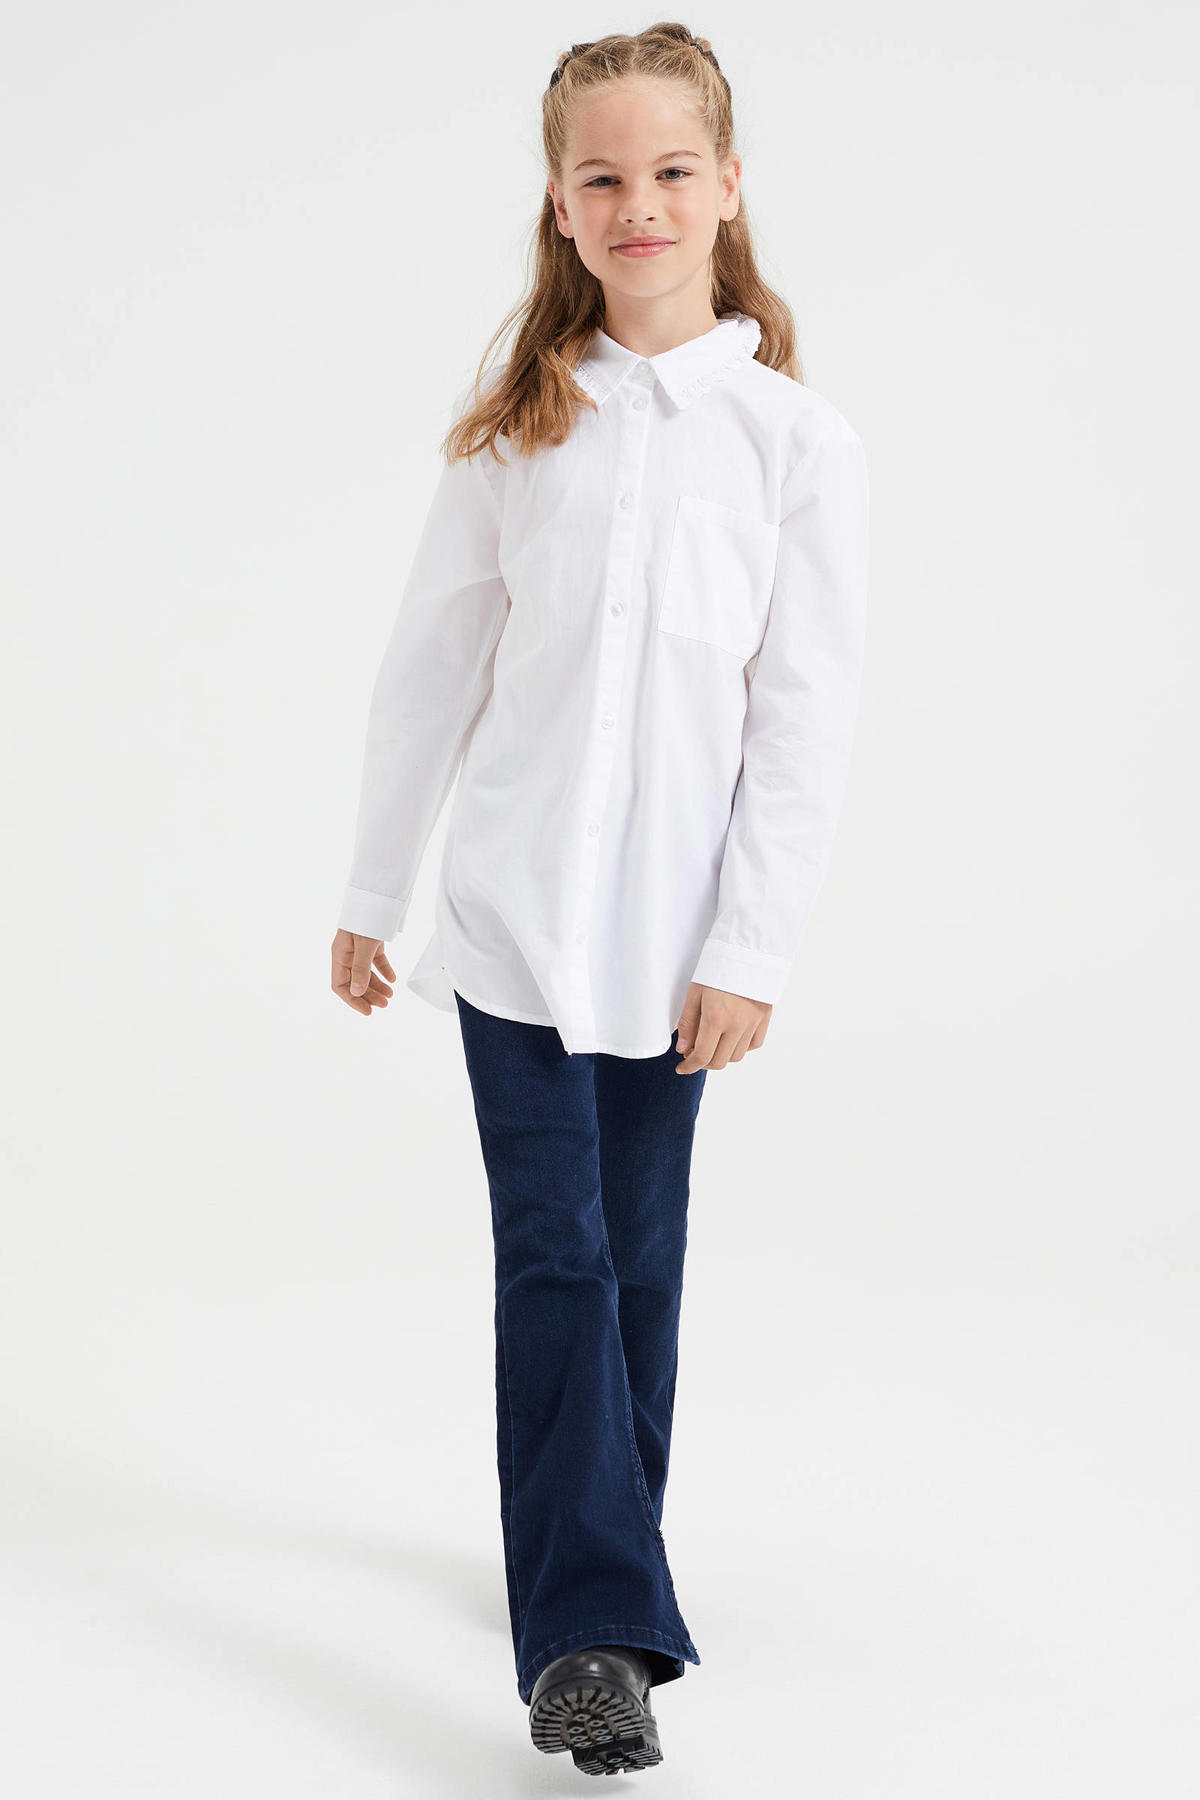 Wrijven Slordig Een zin WE Fashion blouse wit kopen? | Morgen in huis | kleertjes.com